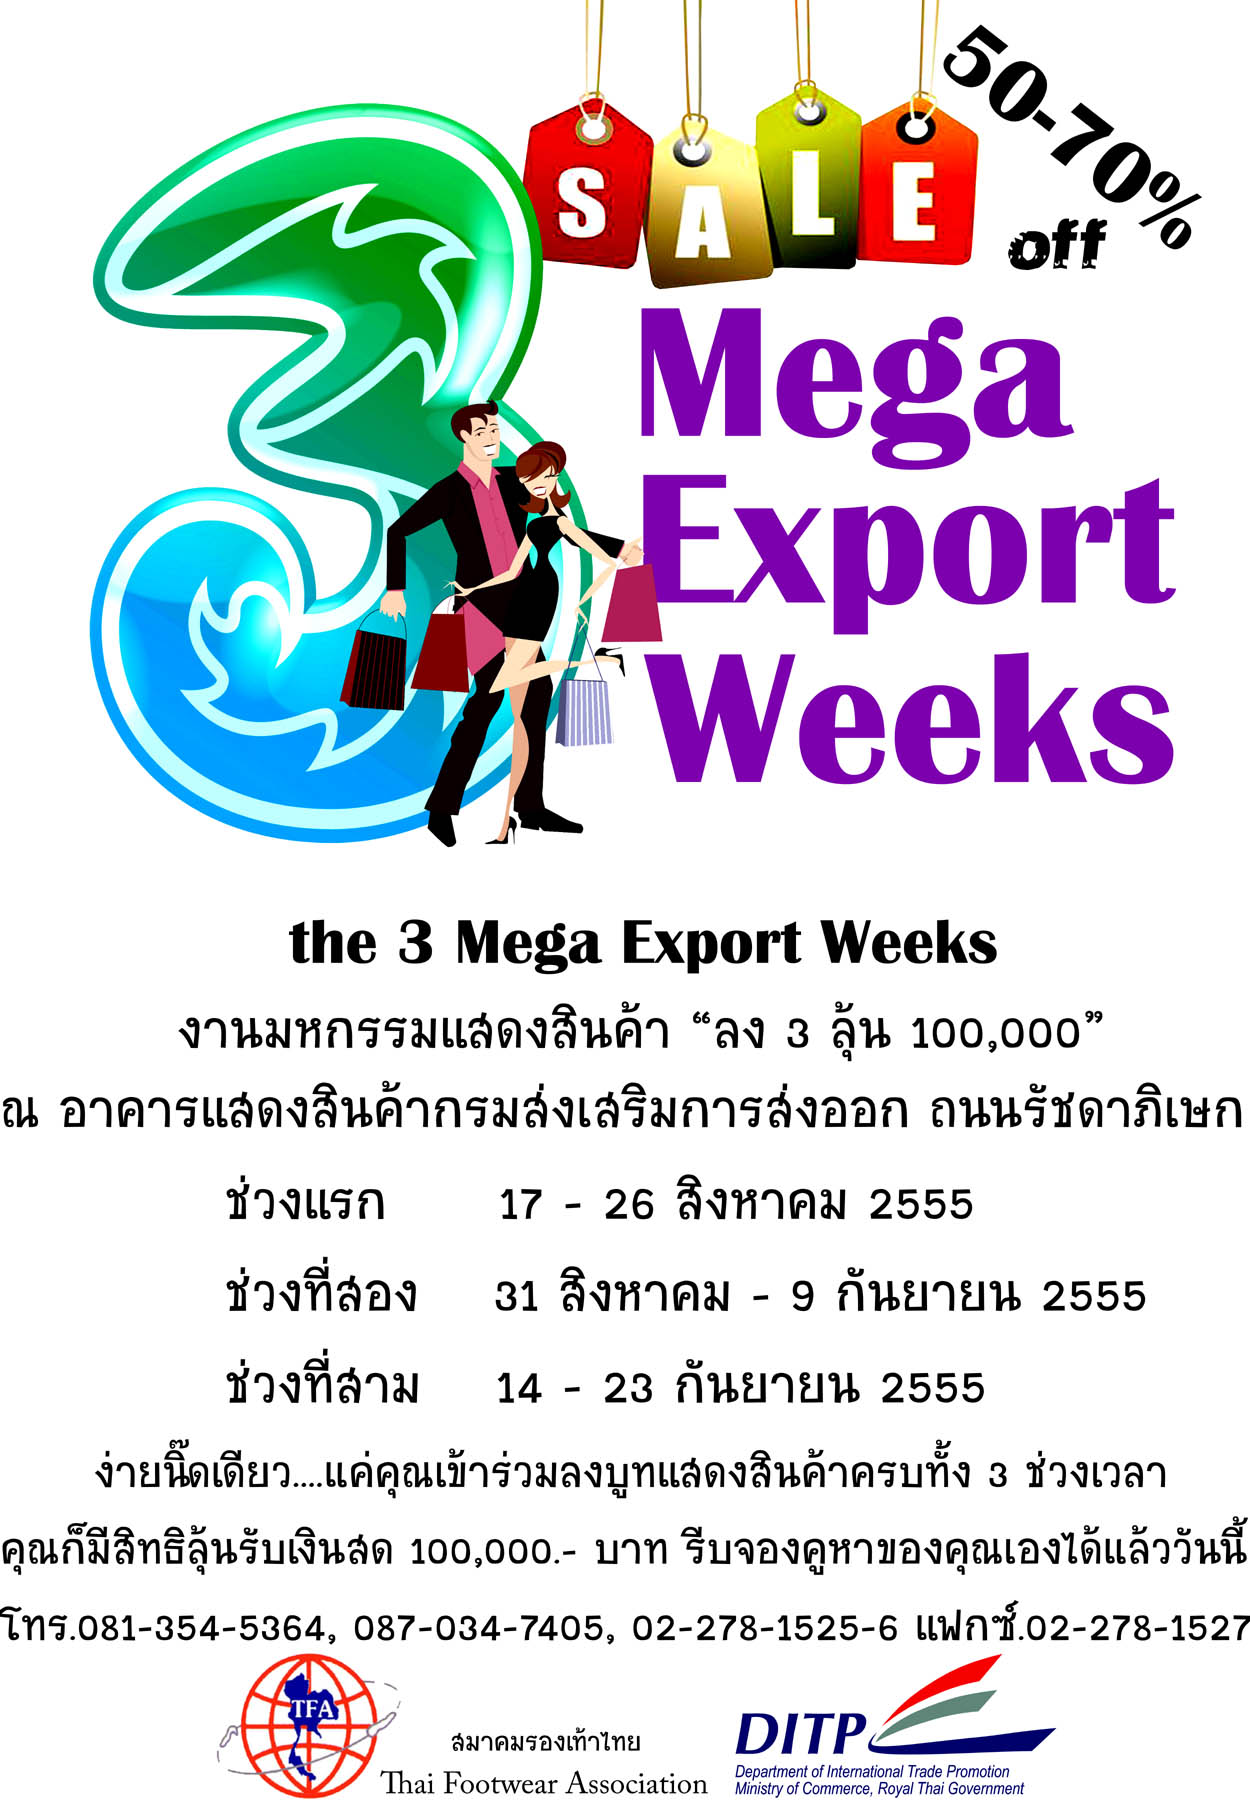 มหกรรมงานแสดงสินค้า The 3 Mega Export Weeks 2012 ณ ถ.รัชดาฯ รูปที่ 1